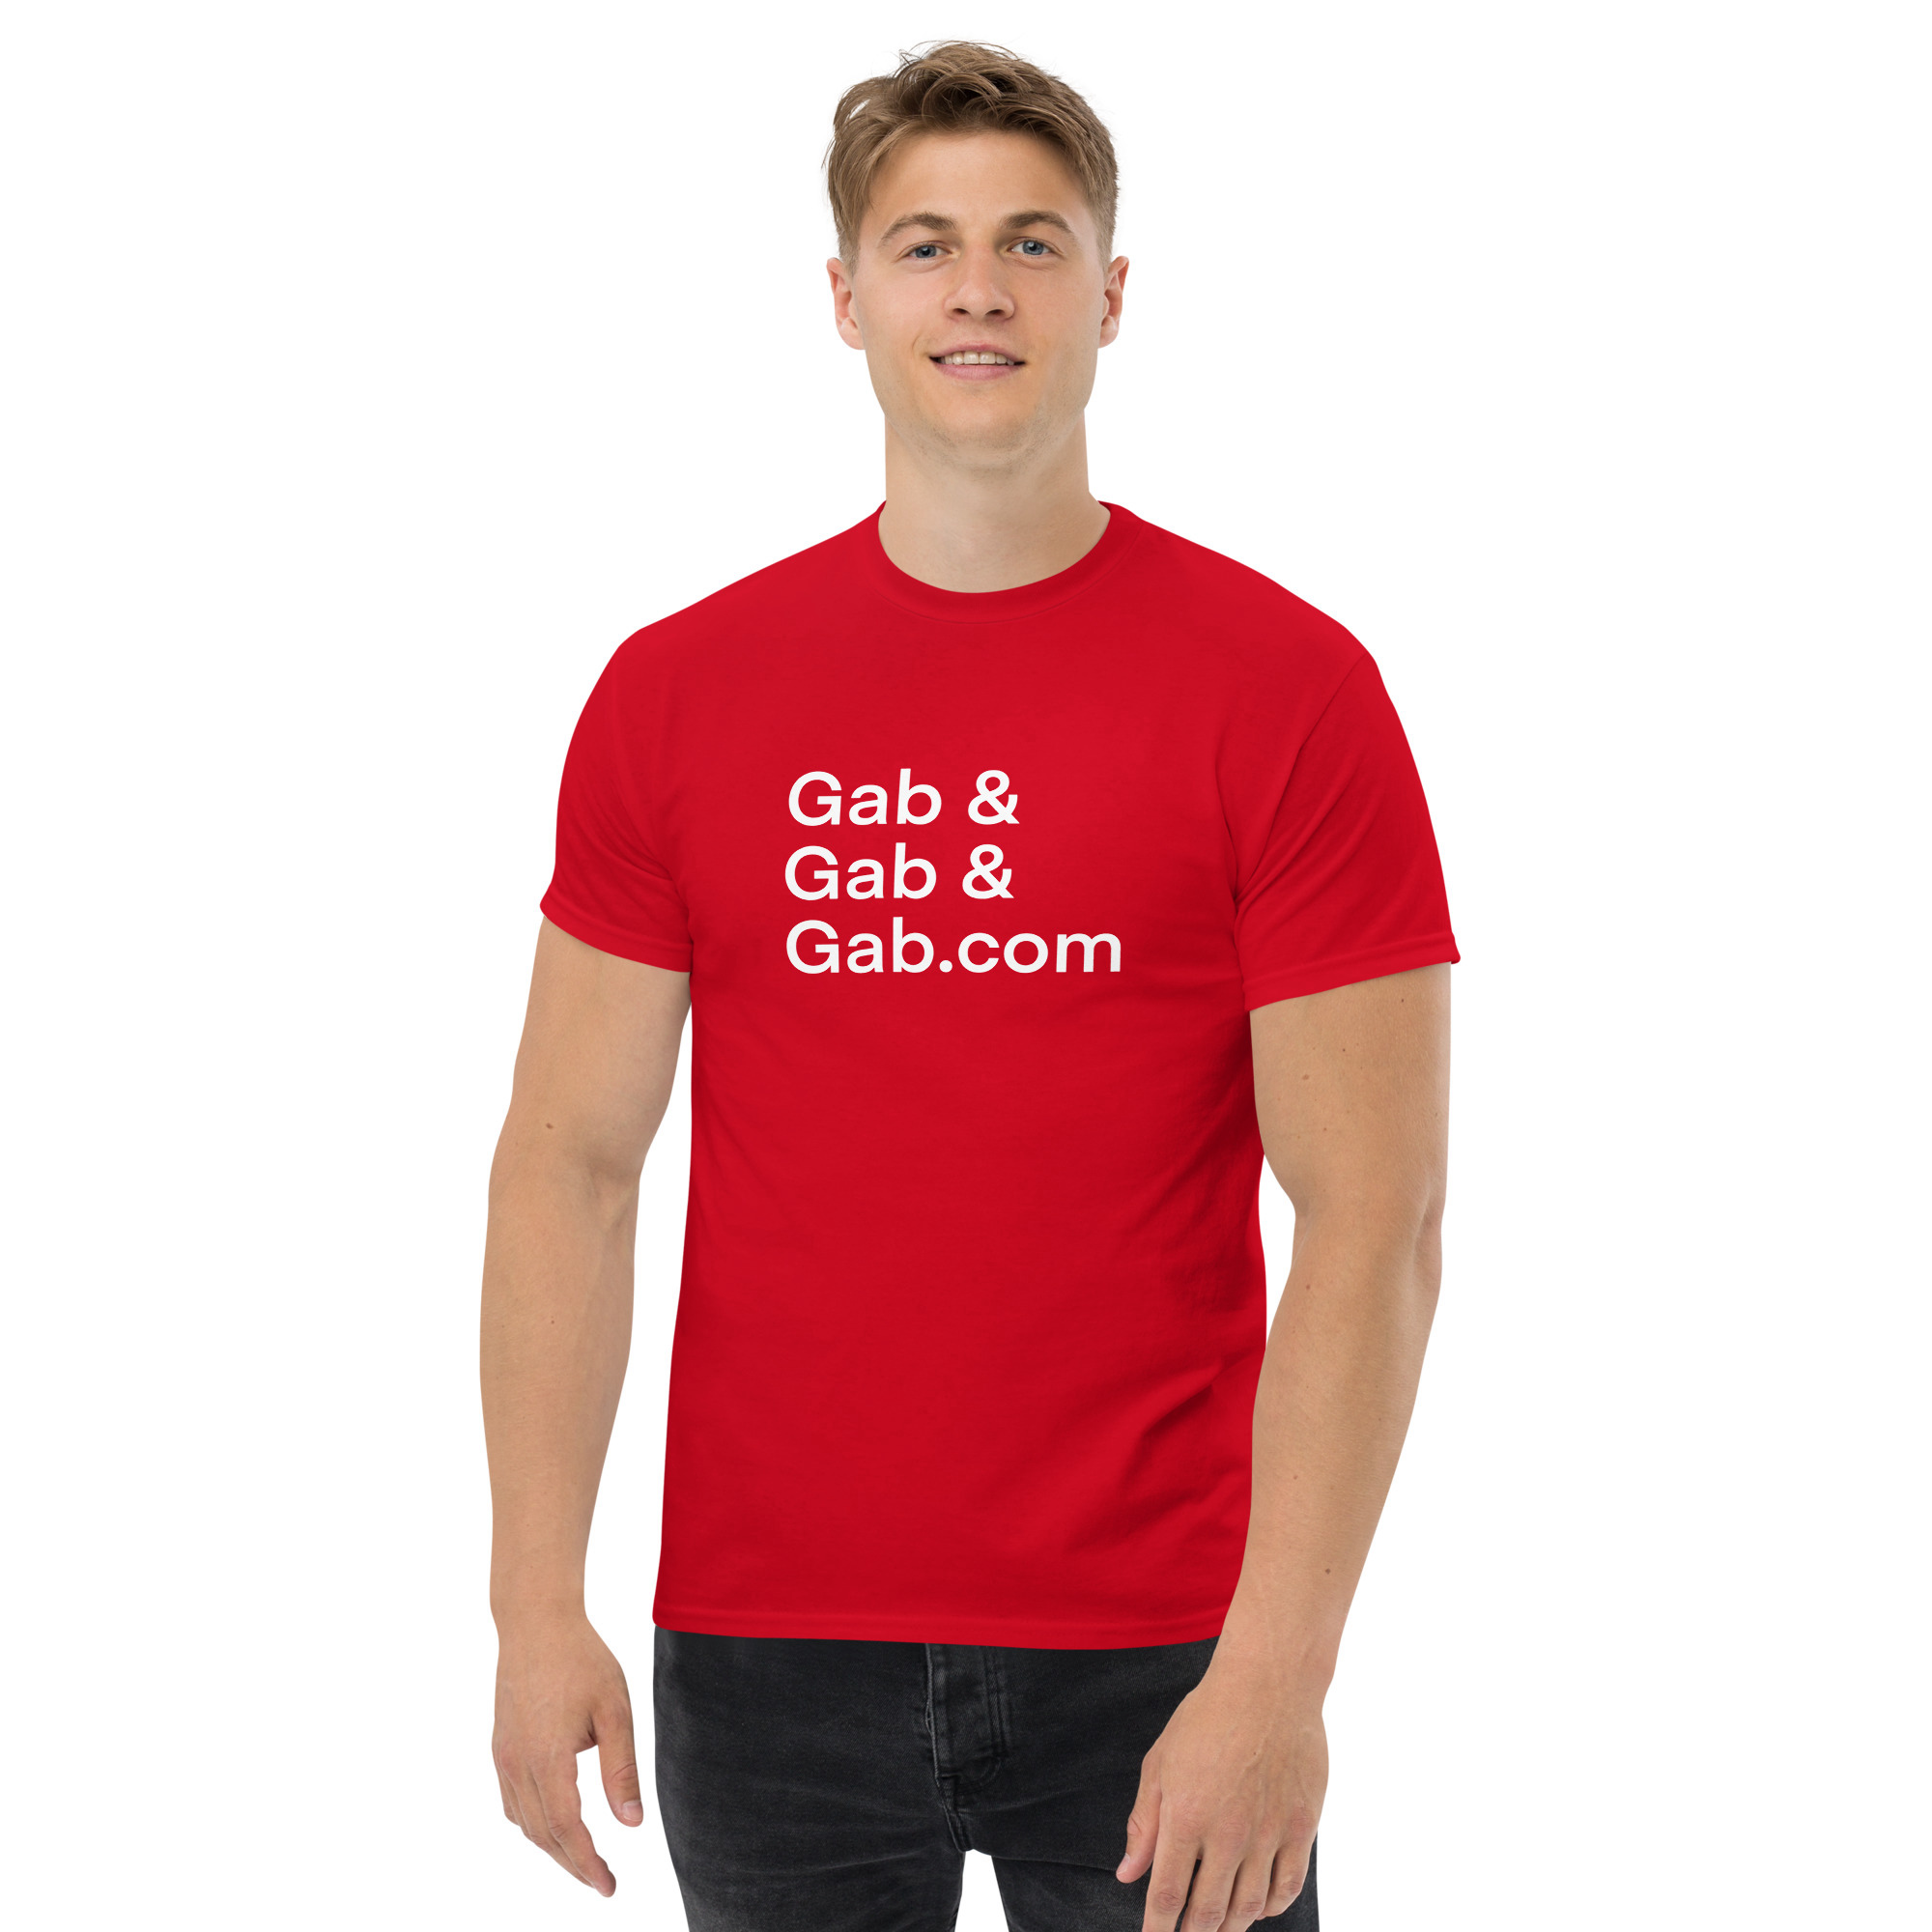 Gab, & Gab, & Gab.com T-Shirt - Red / M